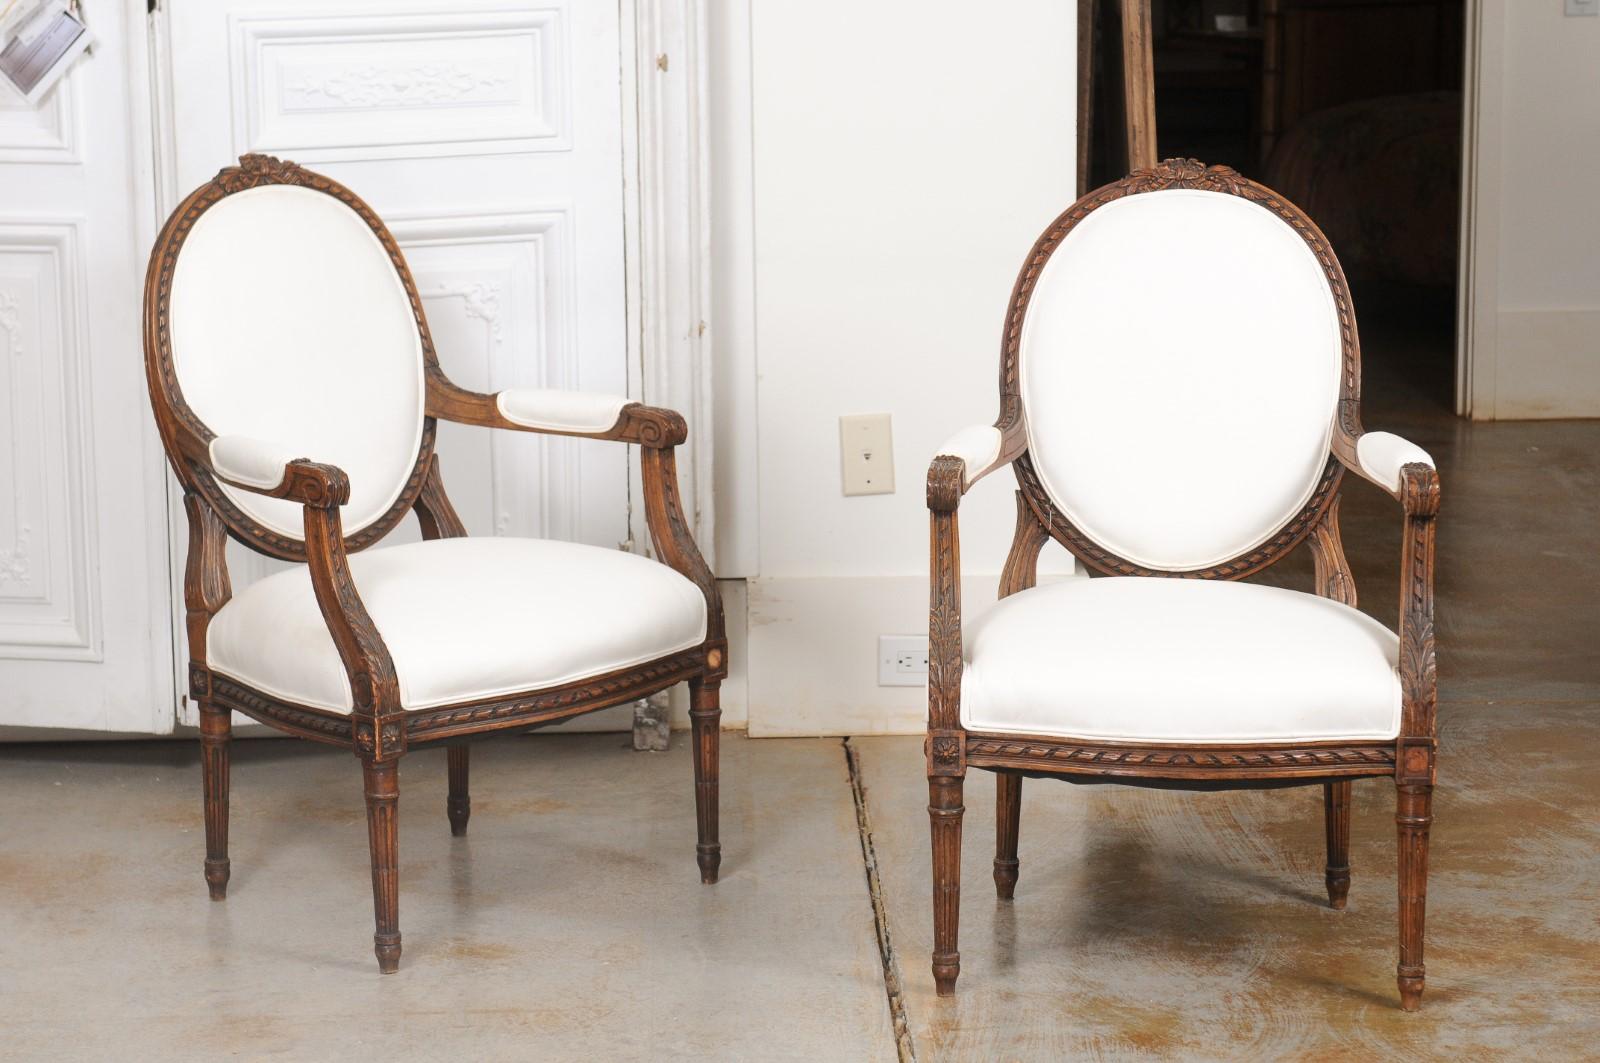 Paire de fauteuils français de style Louis XVI en noyer, datant du milieu du XIXe siècle, avec dossiers ovales, décor sculpté et tapisserie neuve. Créée en France sous le règne de l'empereur Napoléon III, cette paire de fauteuils présente les